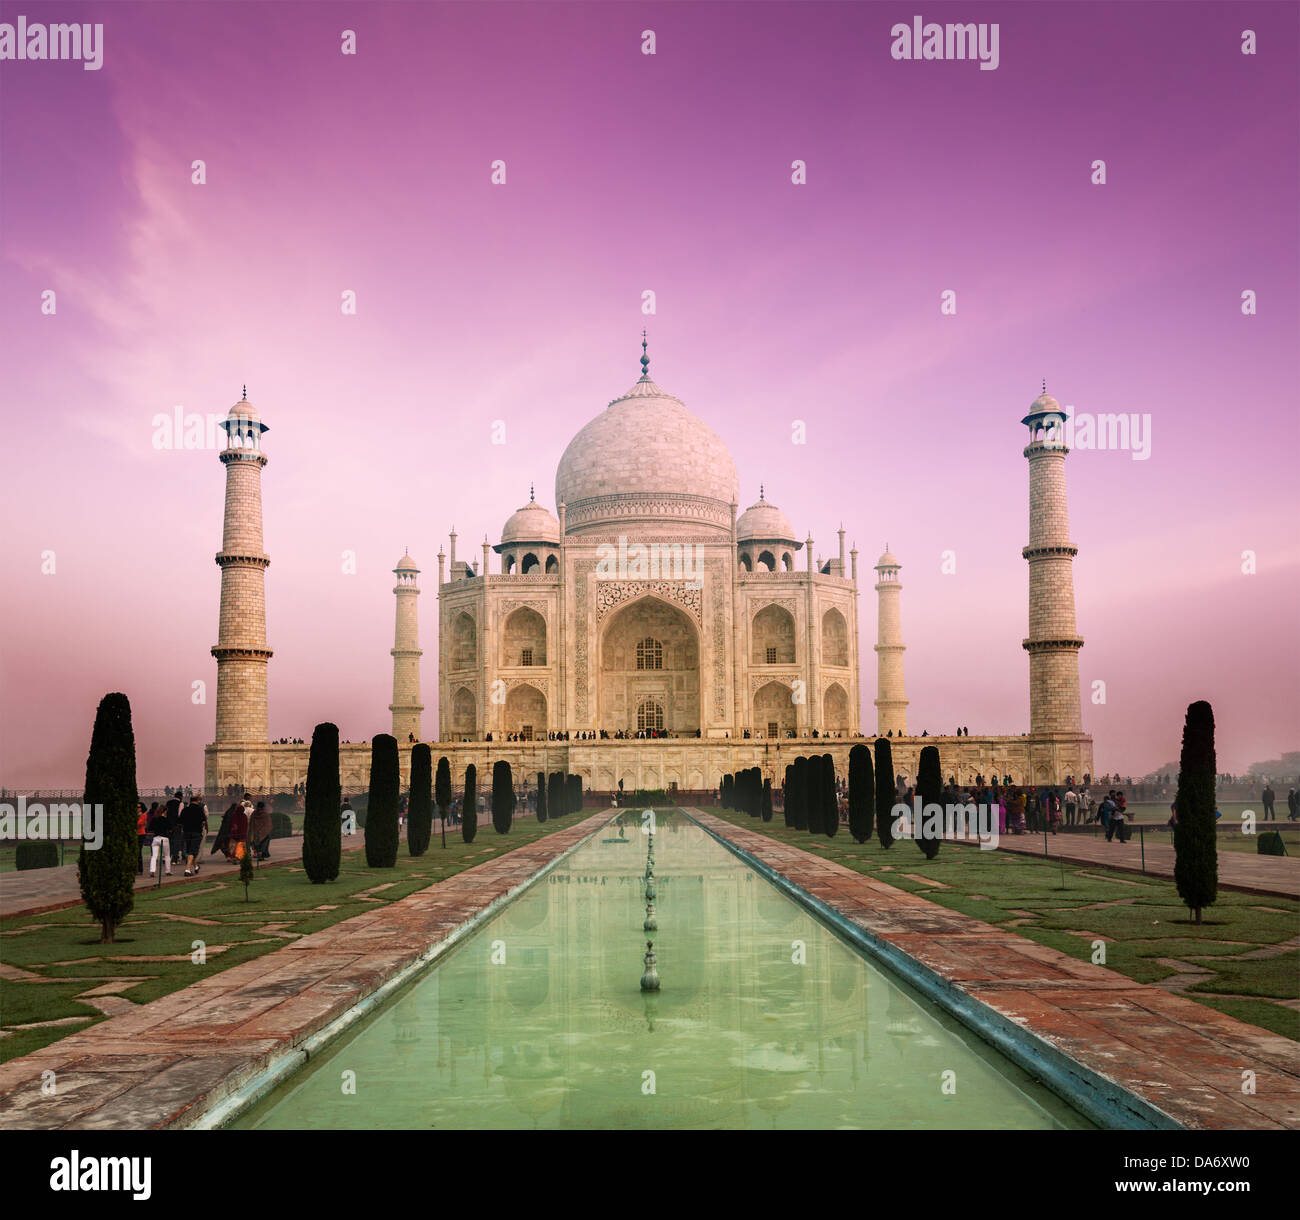 Taj Mahal auf dem Sunset, indischen Symbol - Indien Reisen Hintergrund. Agra, Uttar Pradesh, Indien Stockfoto